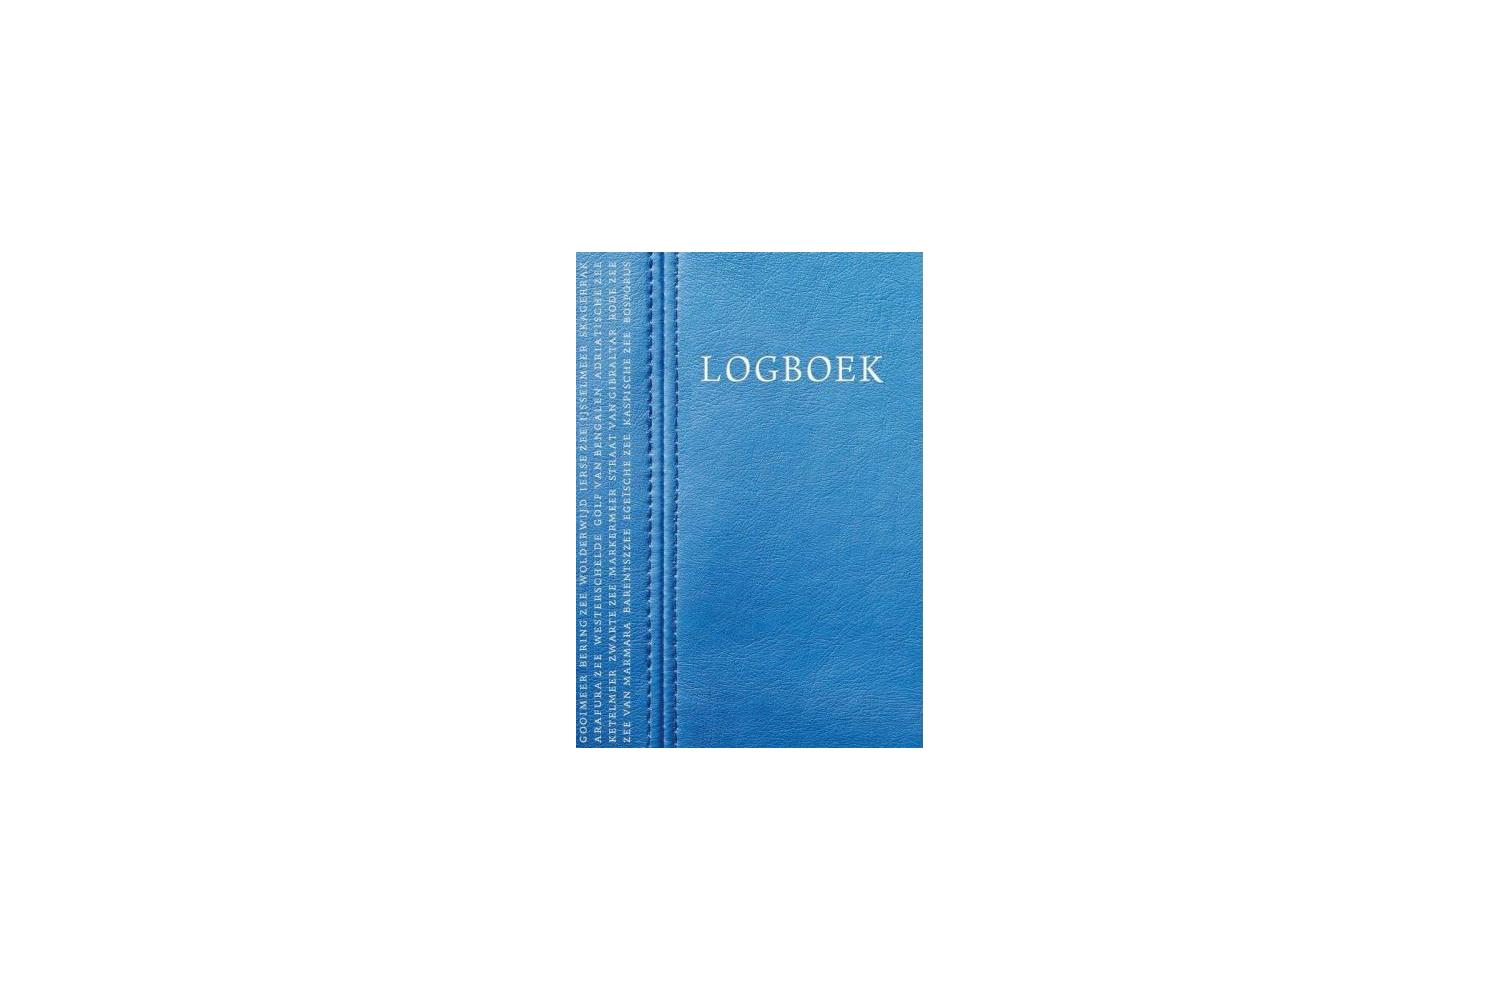 Logboek ´leather look´ - Nico Swanink